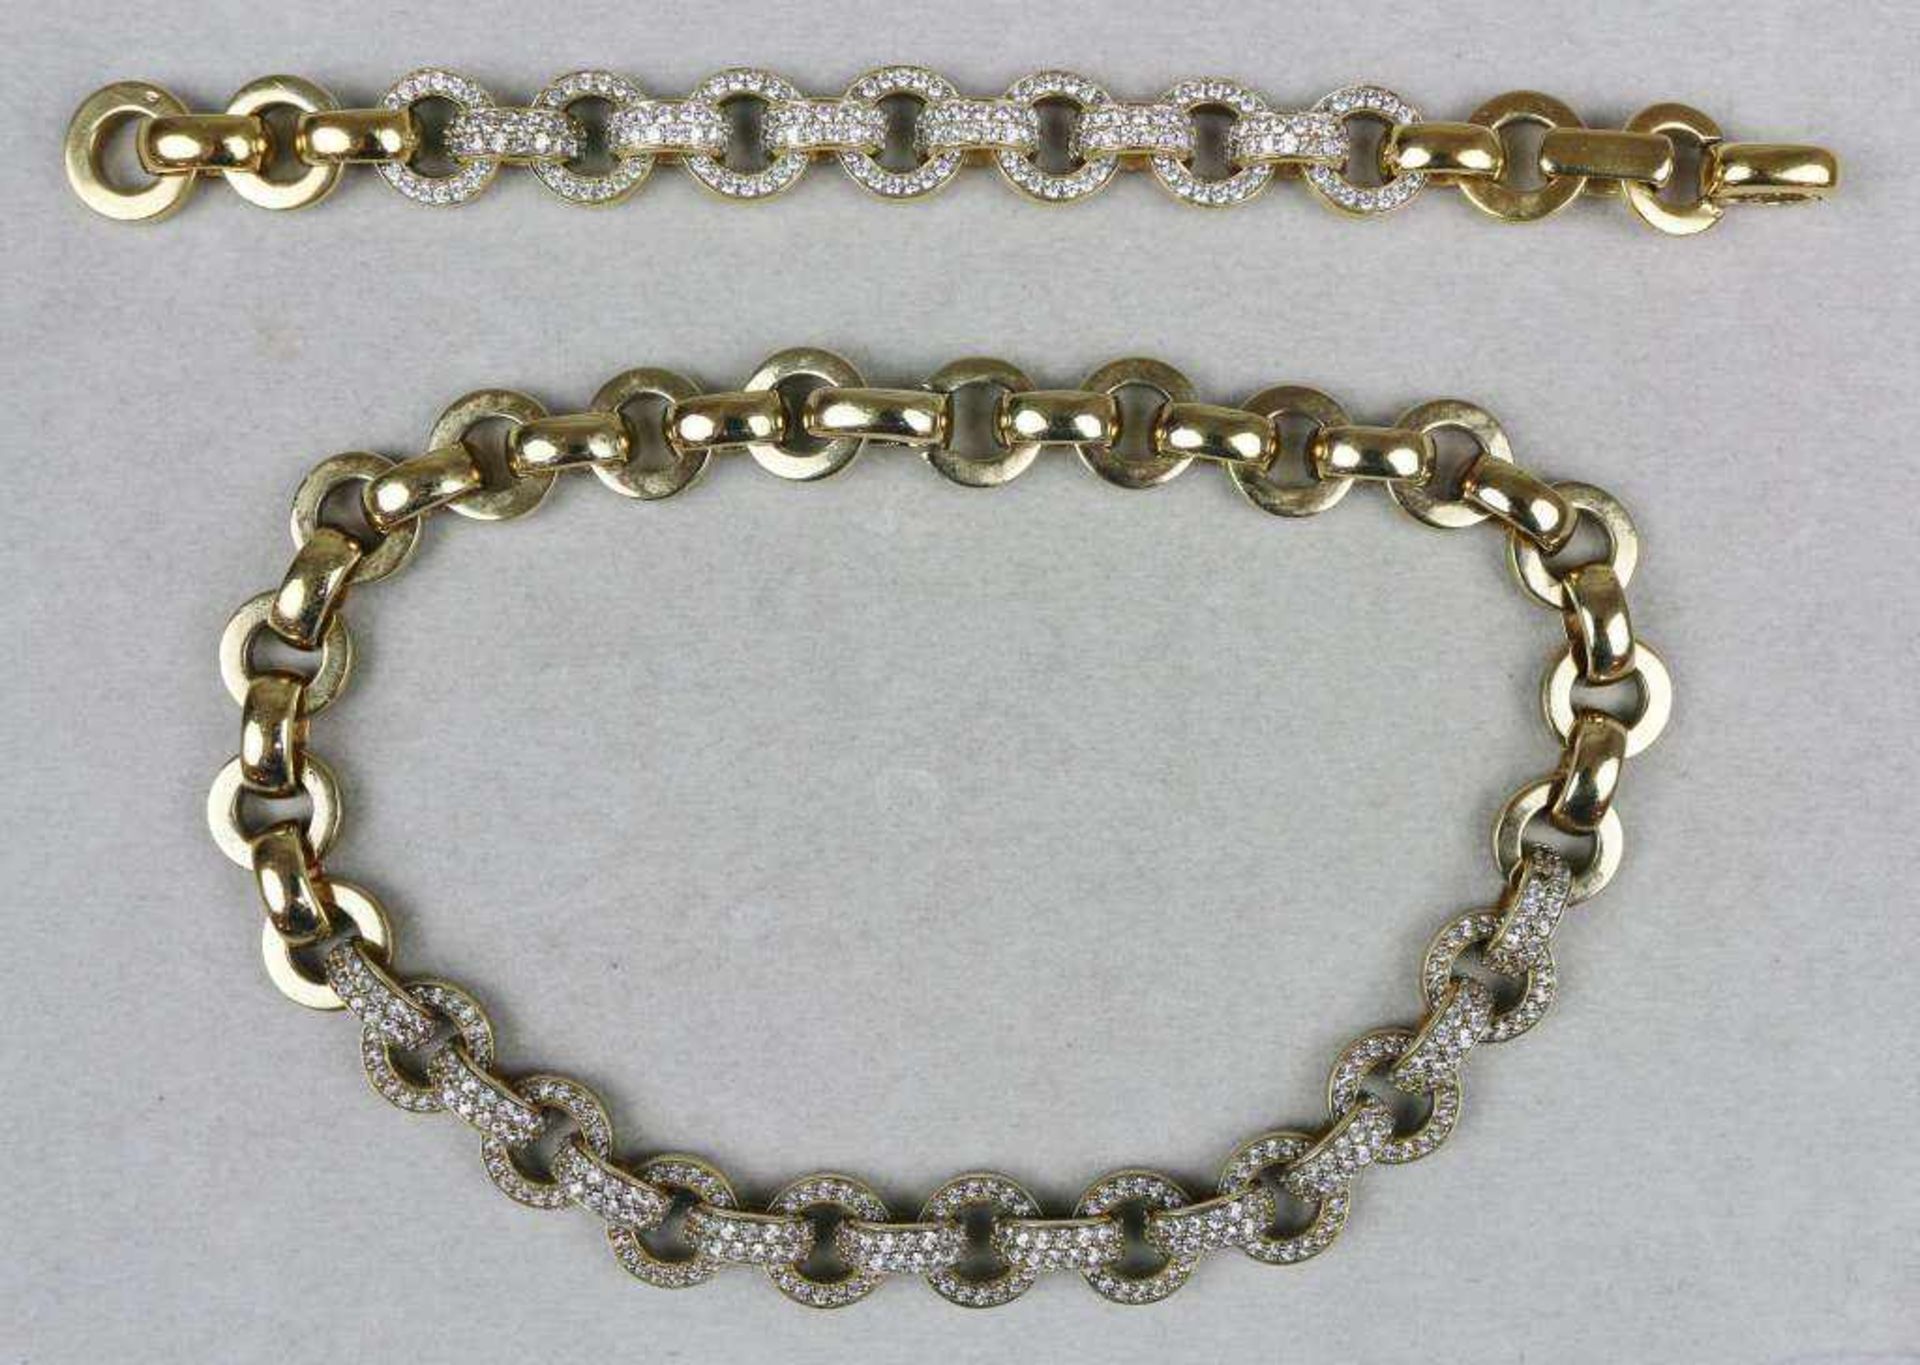 Halskette und Armband, Gliederketten mit Diamantsplitterersatz, kreis- und halbkreisförmigen Glieder